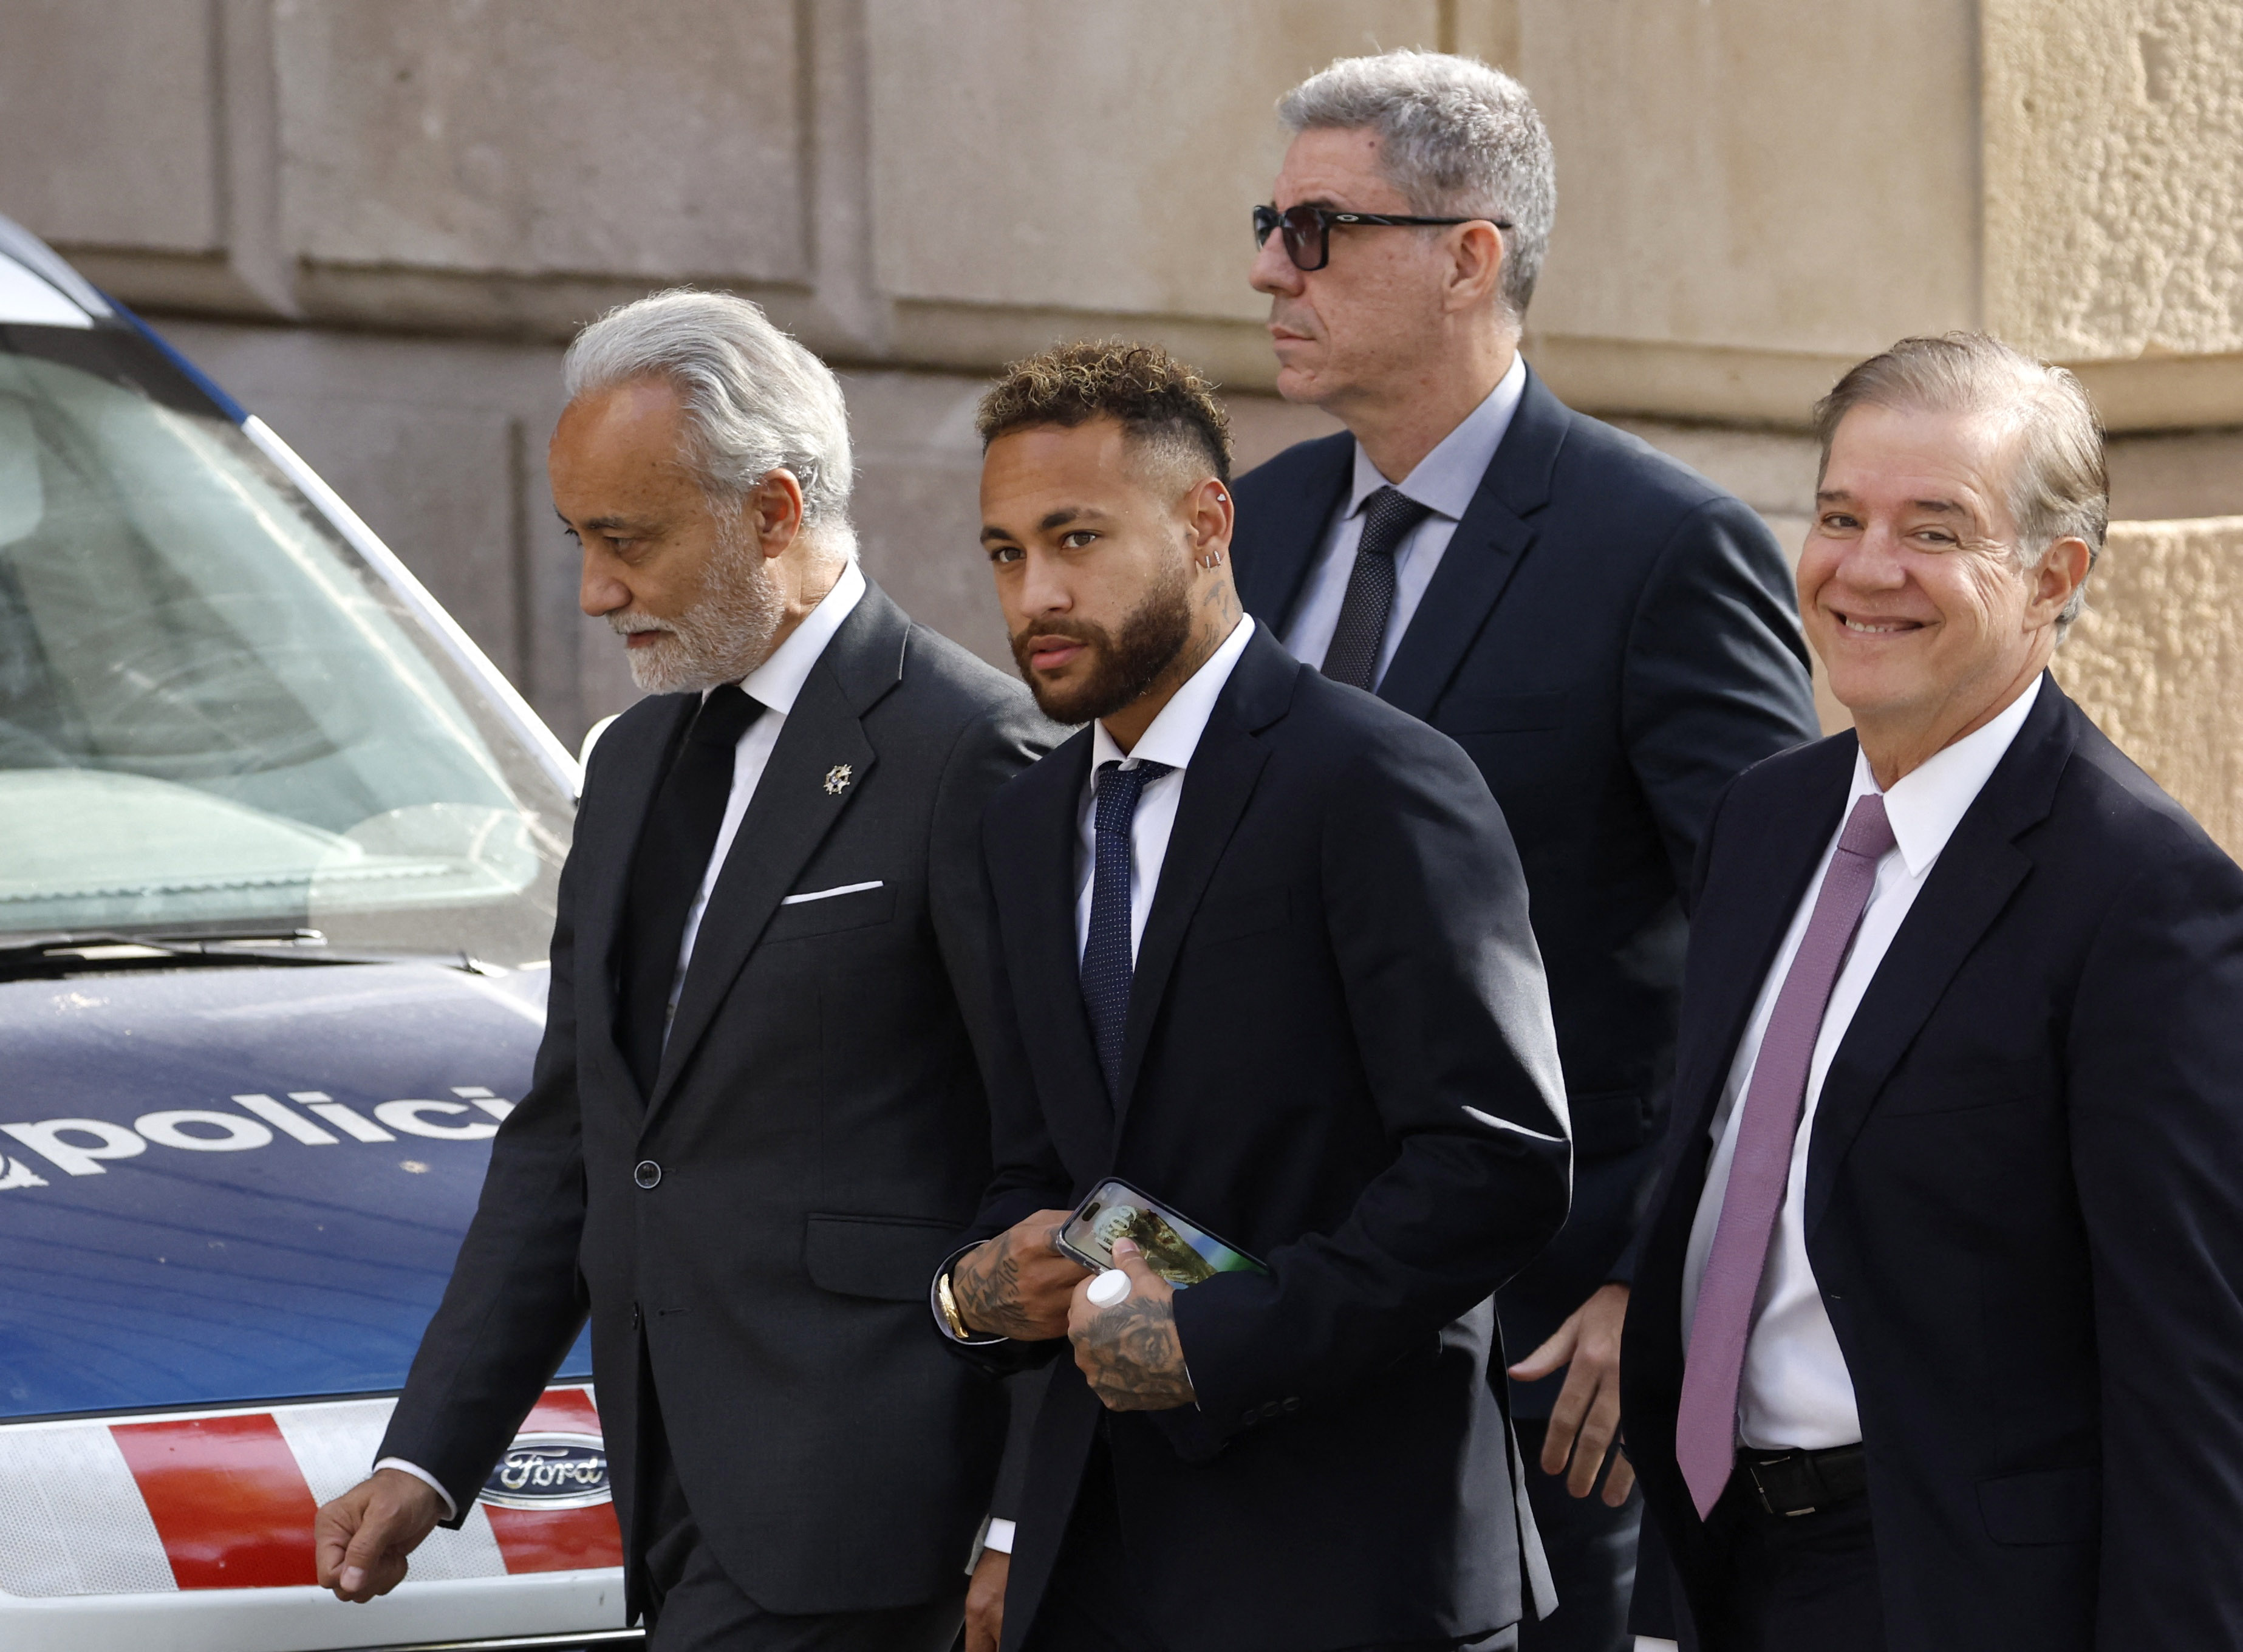 Neymar se presentó en la Audiencia de Barcelona por el juicio que investiga su polémico fichaje por el Barcelona (Foto: REUTERS)